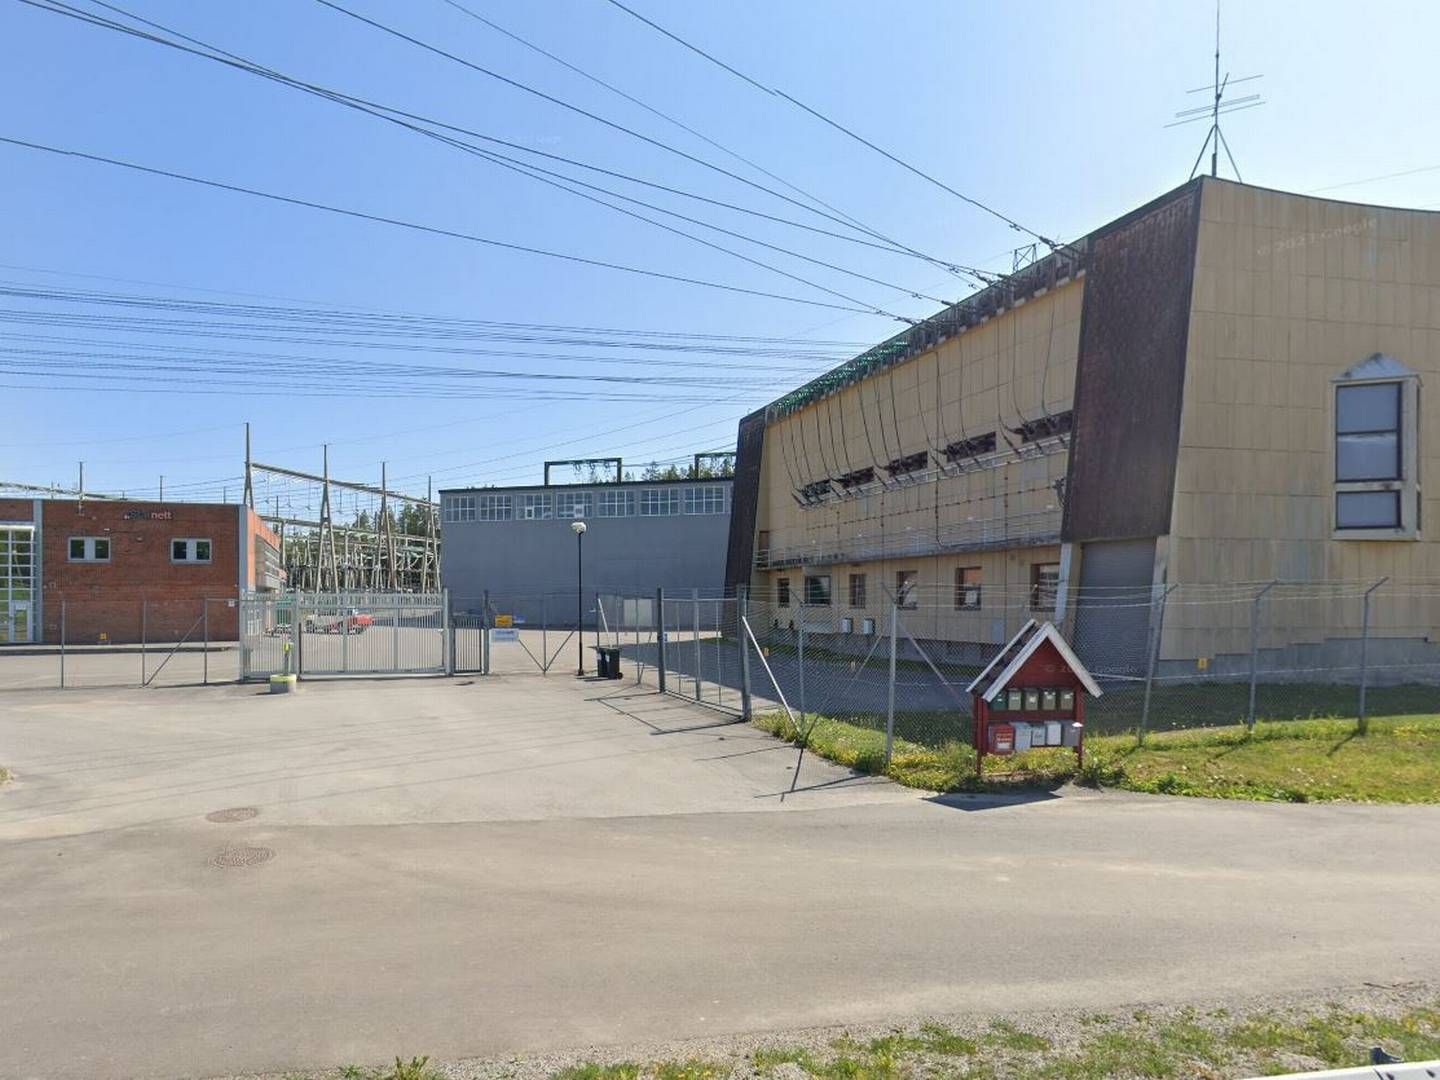 Tegneby transformatorstasjon i Vestby. | Foto: Skjermbilde fra Google Maps.